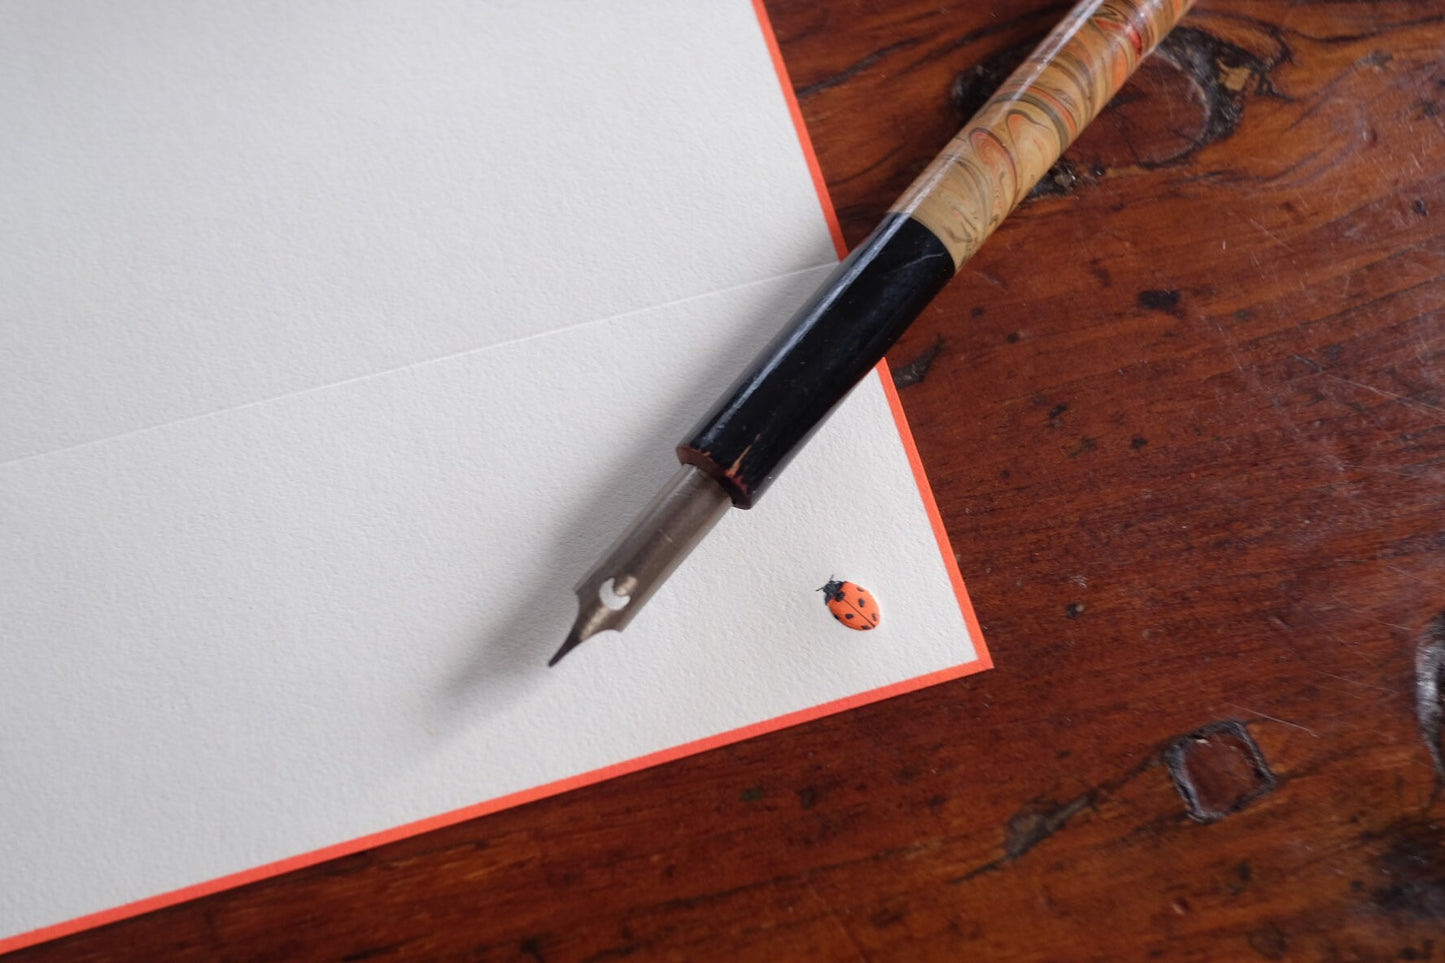 Crane and Co. Ladybug Letter Set - Stationery